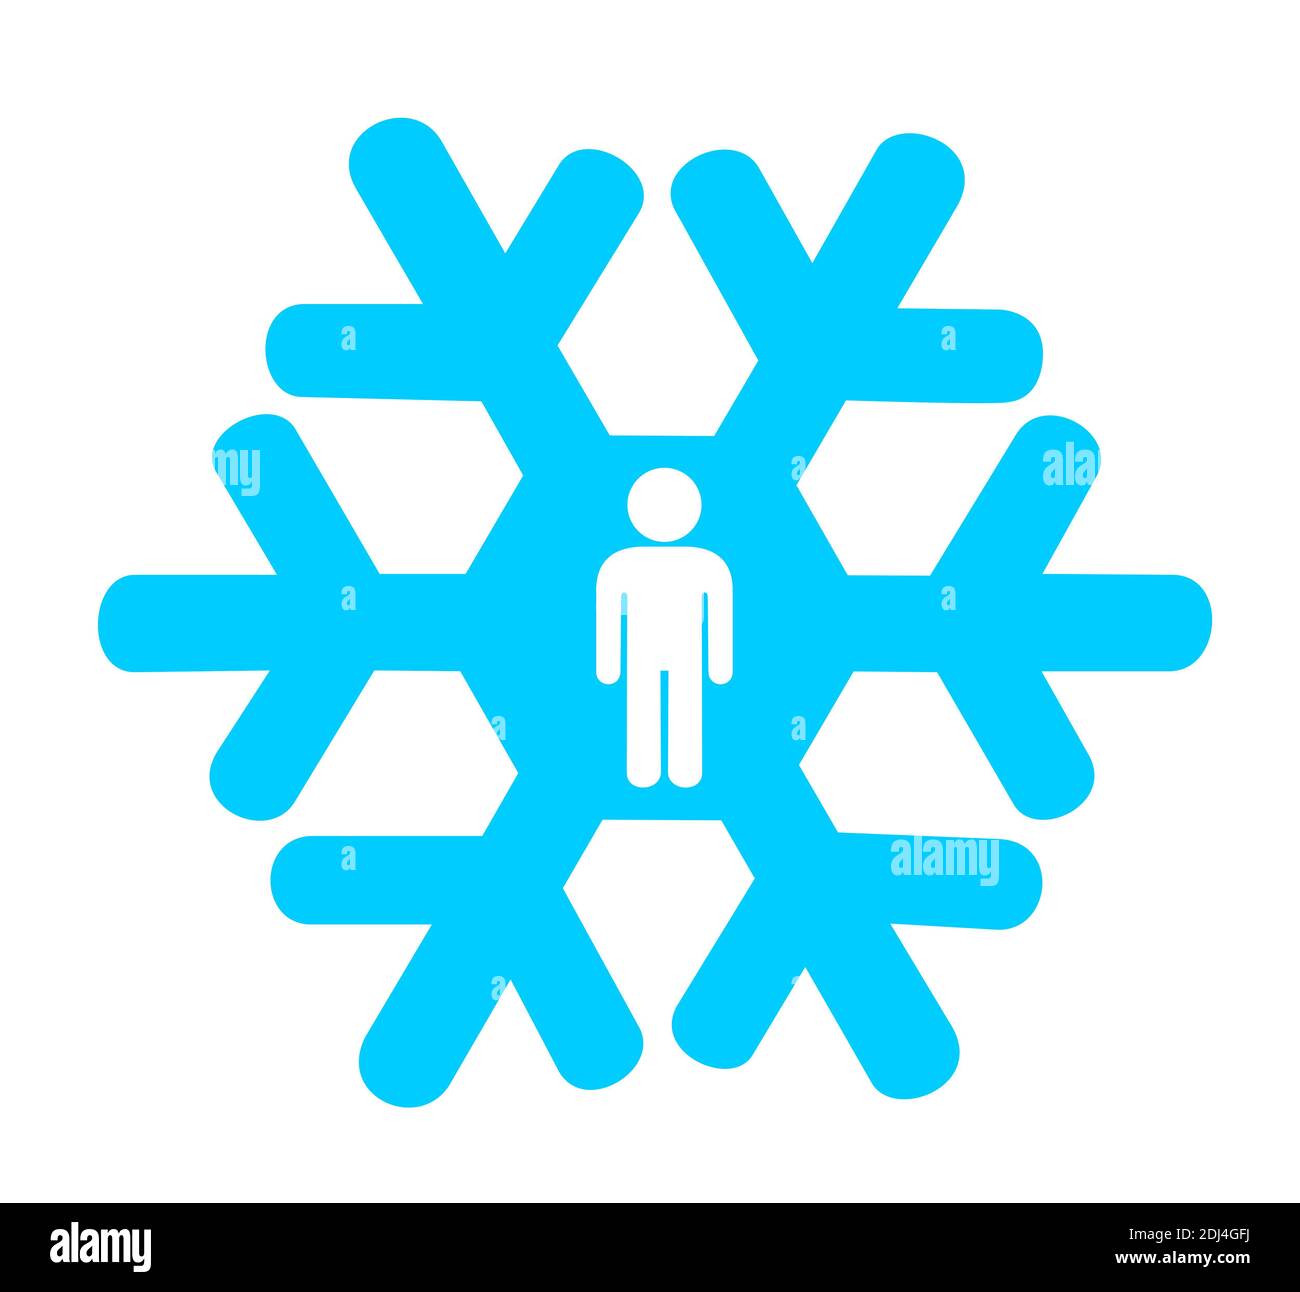 Significato metafora - fiocco di neve con silhouette dell'uomo come simbolo della generazione di fiocchi di neve - persone deboli, fragili, vulnerabili. Illustrazione vettoriale Foto Stock